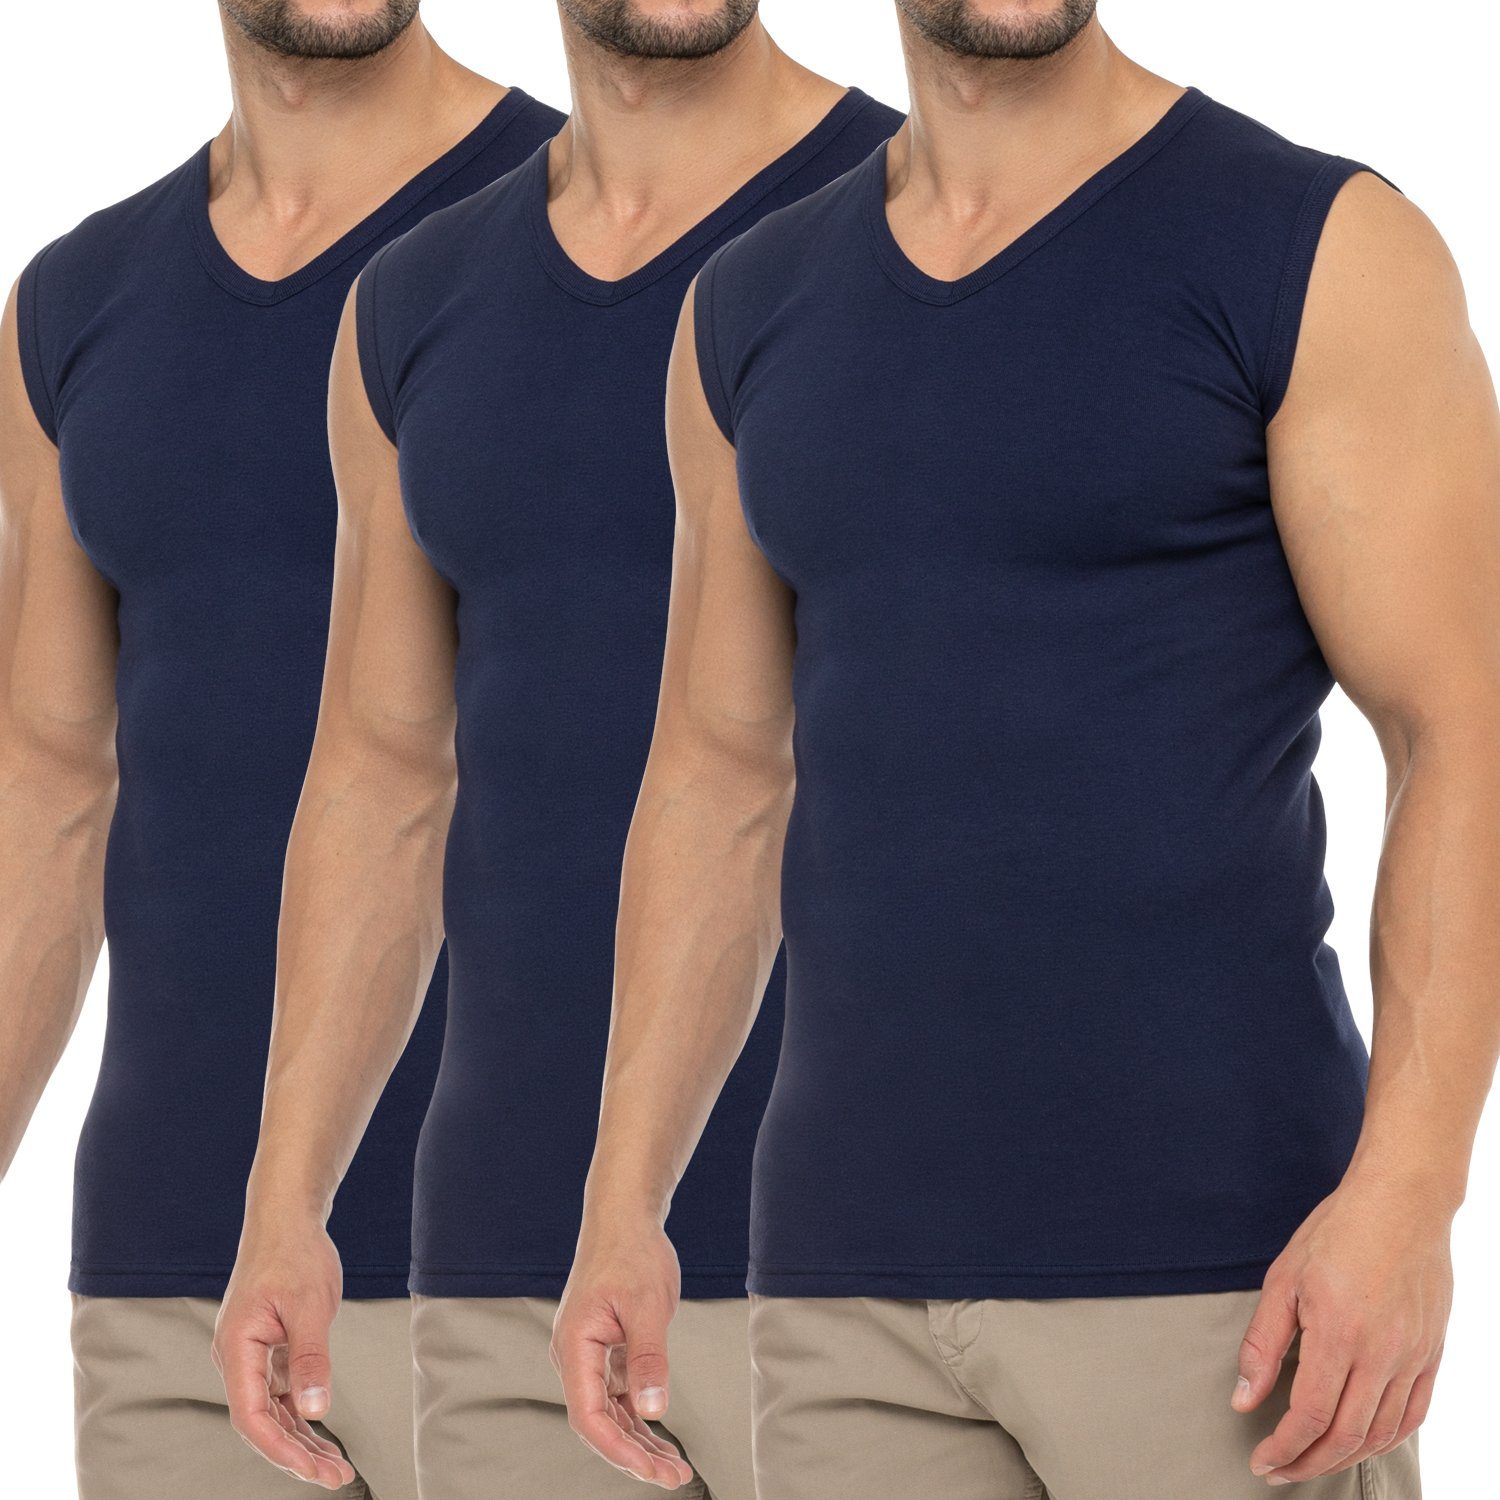 celodoro Unterhemd Herren Business Muskelshirt V-Neck (3er Pack) Muscle Shirt Marine